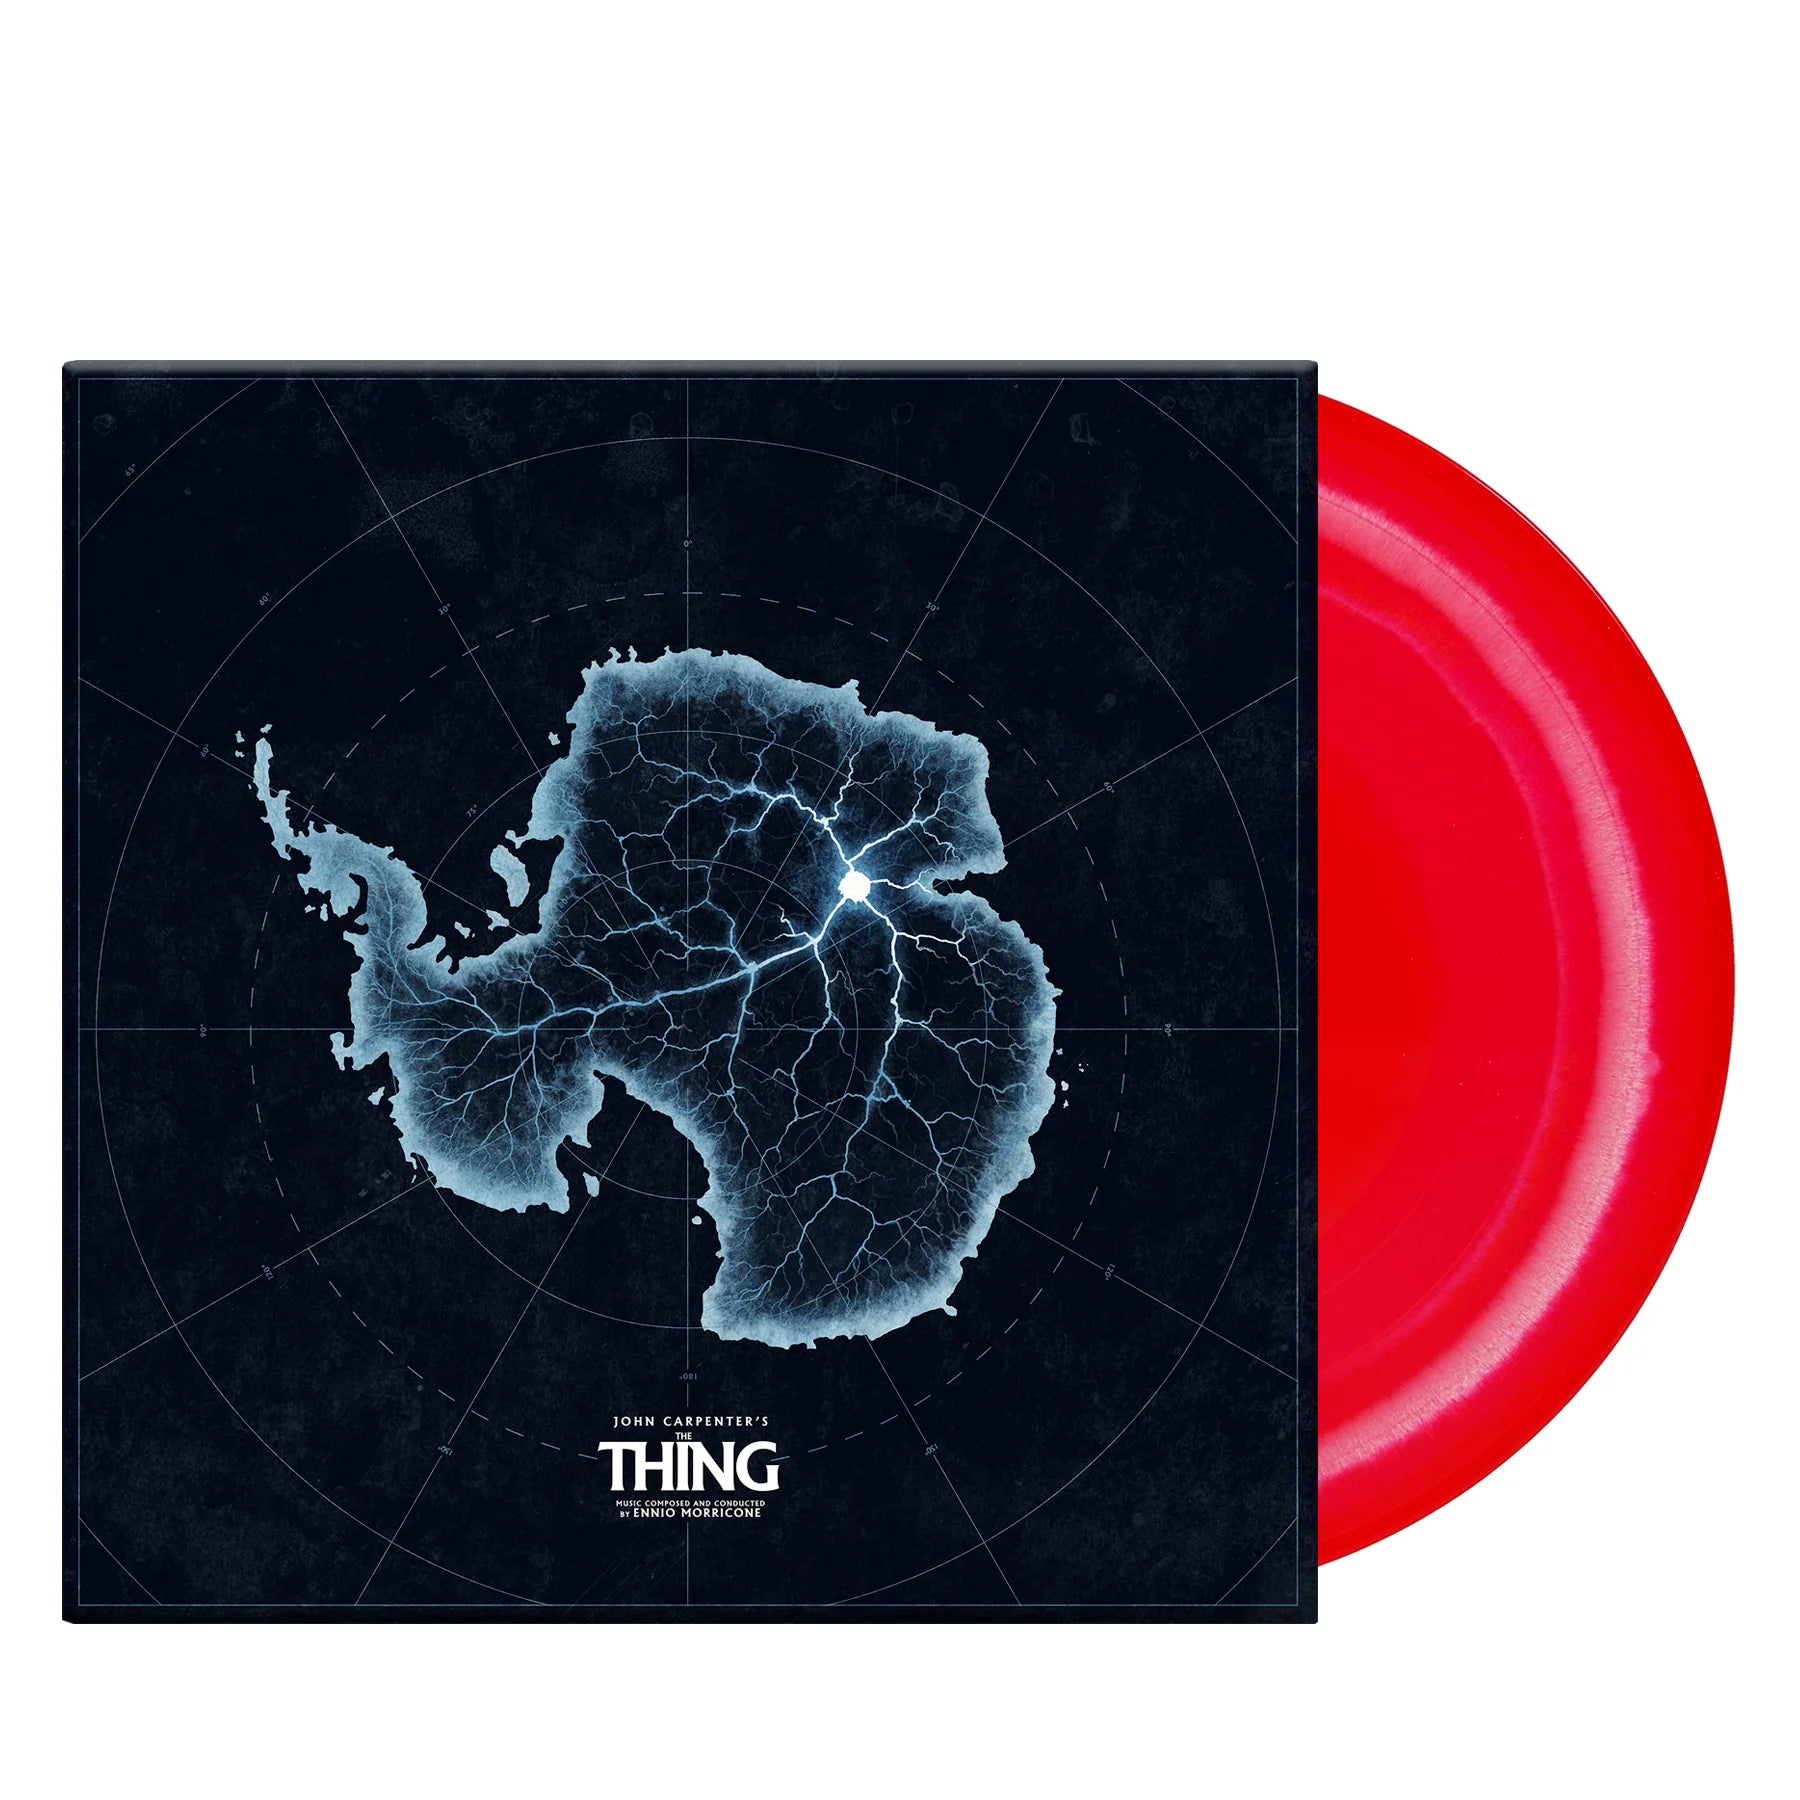 Ennio Morricone - The Thing (Original Soundtrack): Limited Edition Alien Bone + Blood Colour Vinyl LP 